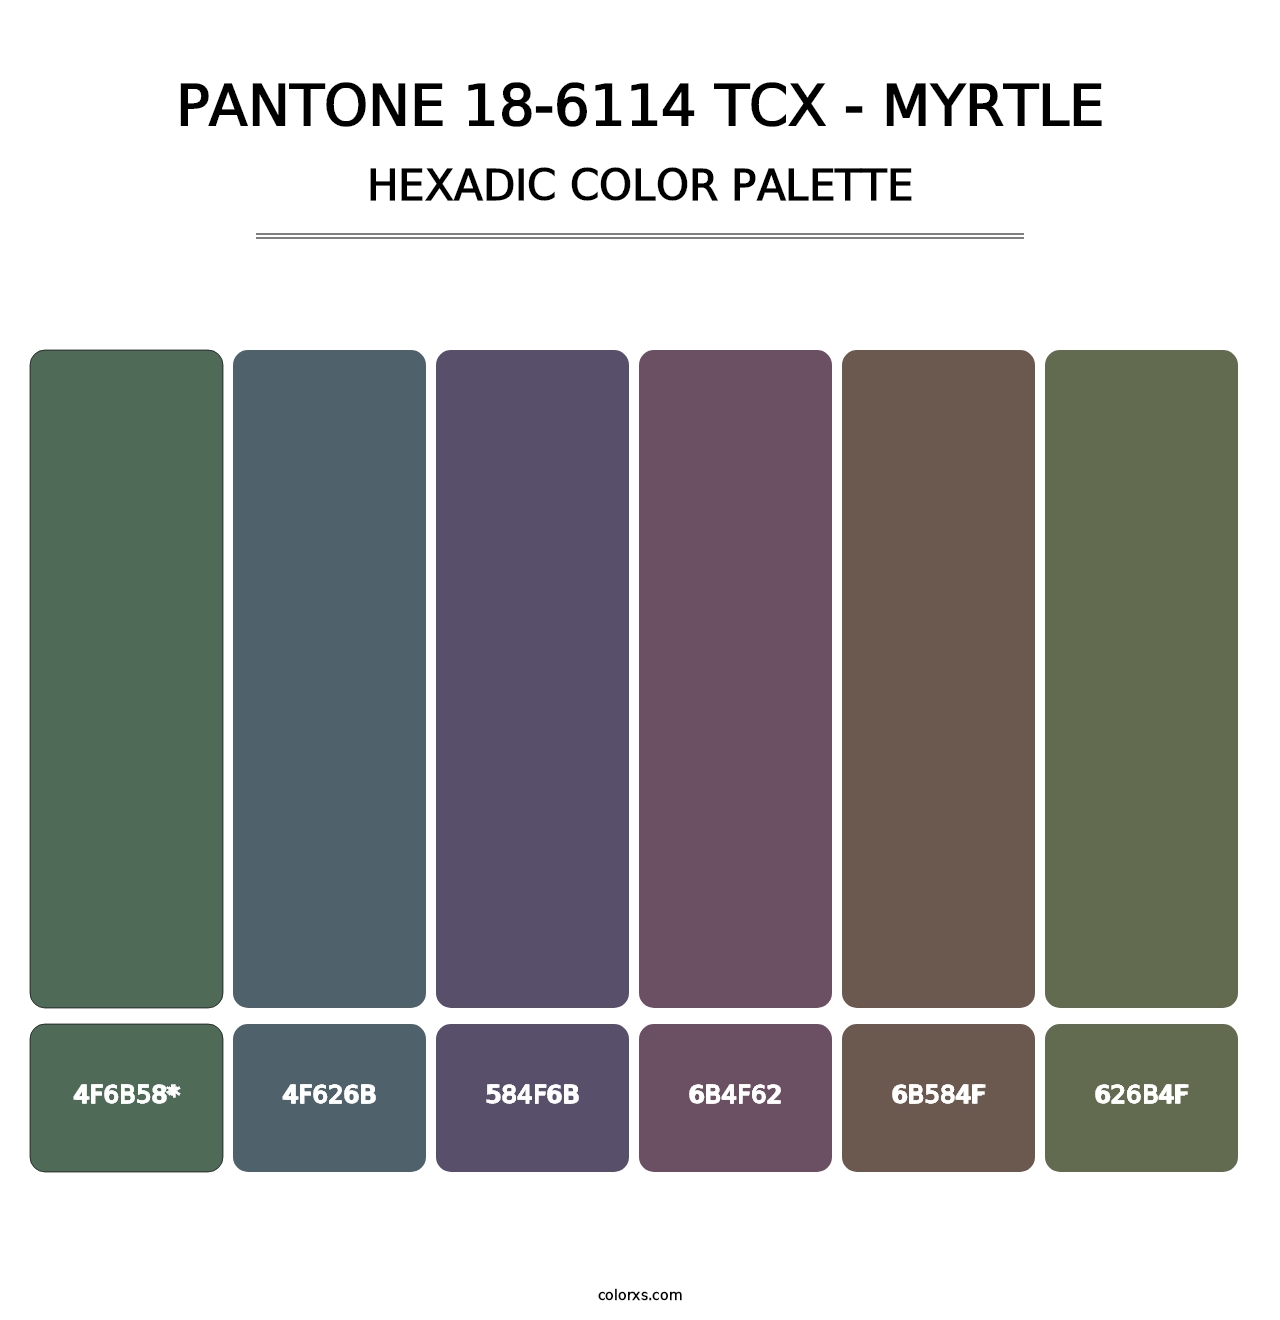 PANTONE 18-6114 TCX - Myrtle - Hexadic Color Palette